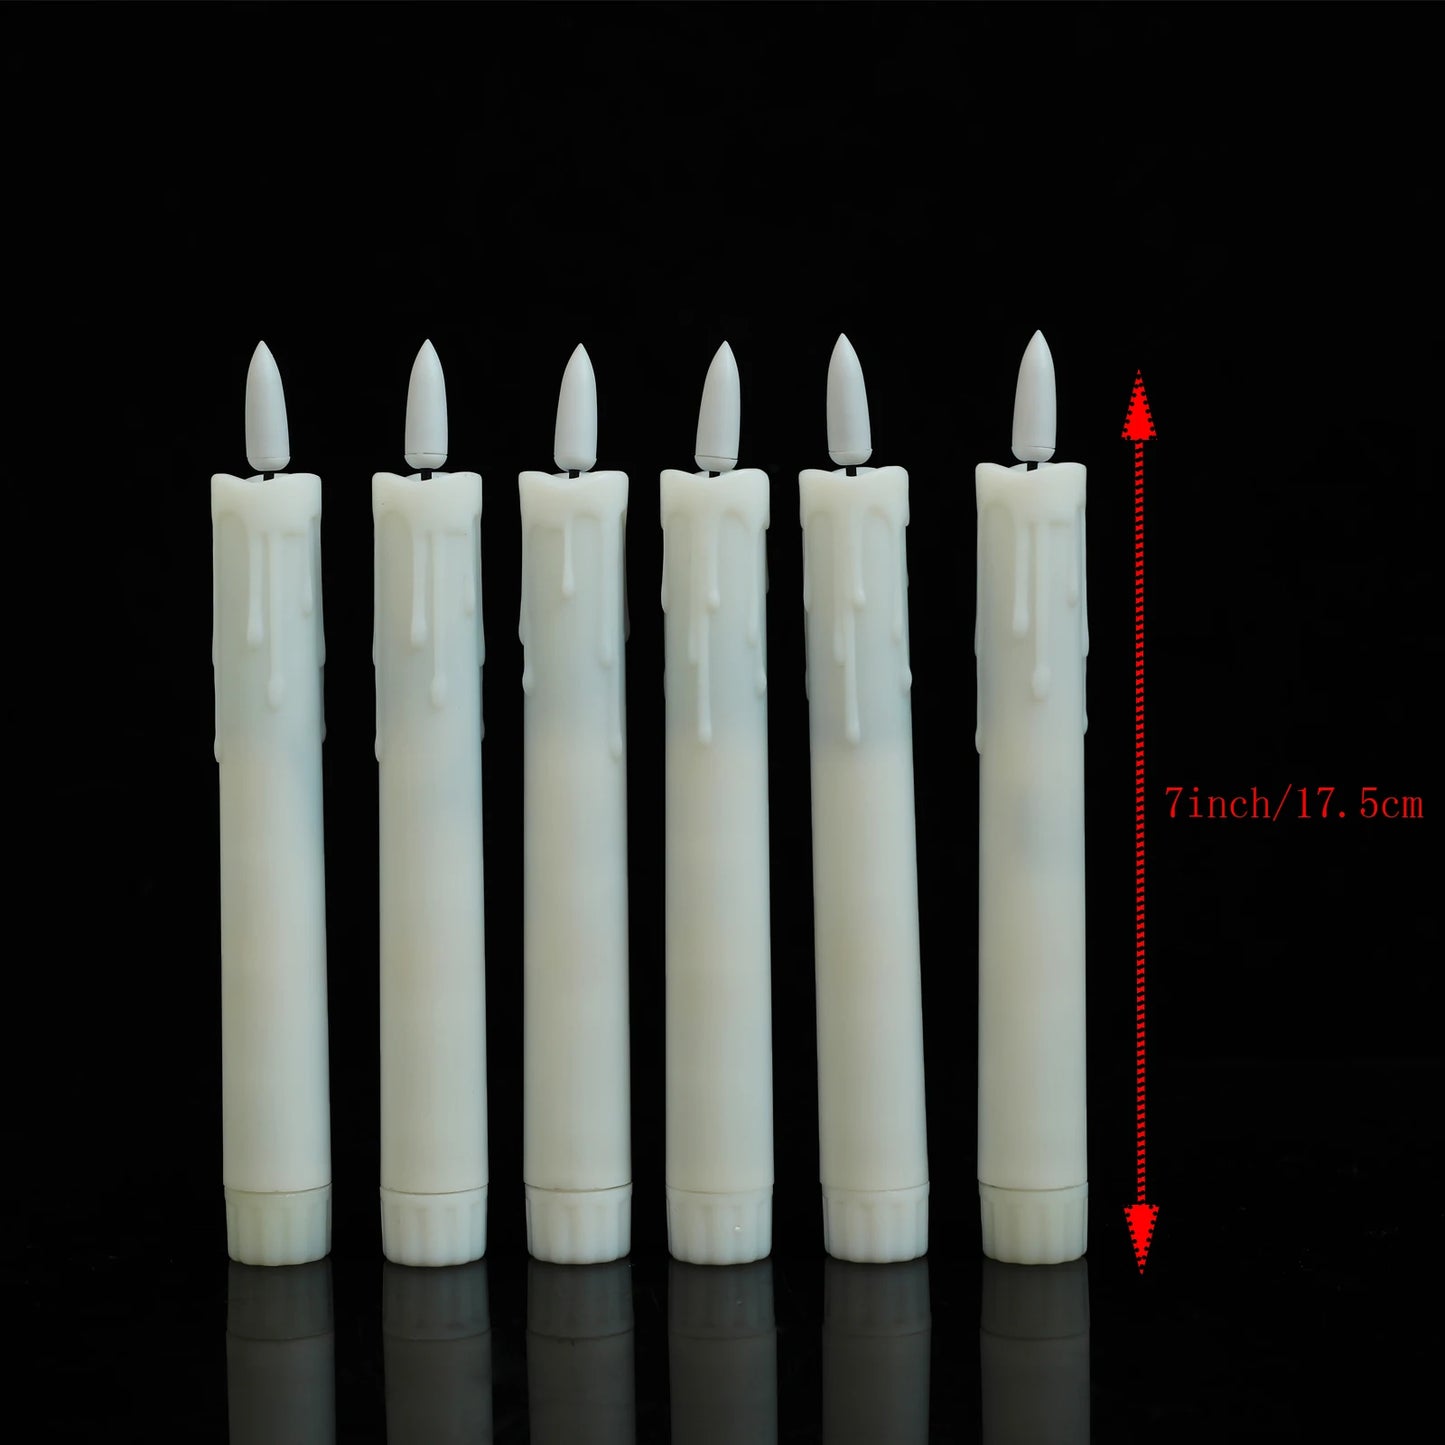 3/4/6/12 peças quentes Luz branca quente sem chamas Decorativa Decorativa Velas LED, 7 polegadas/17,5 cm Plástico falsamente velas realistas